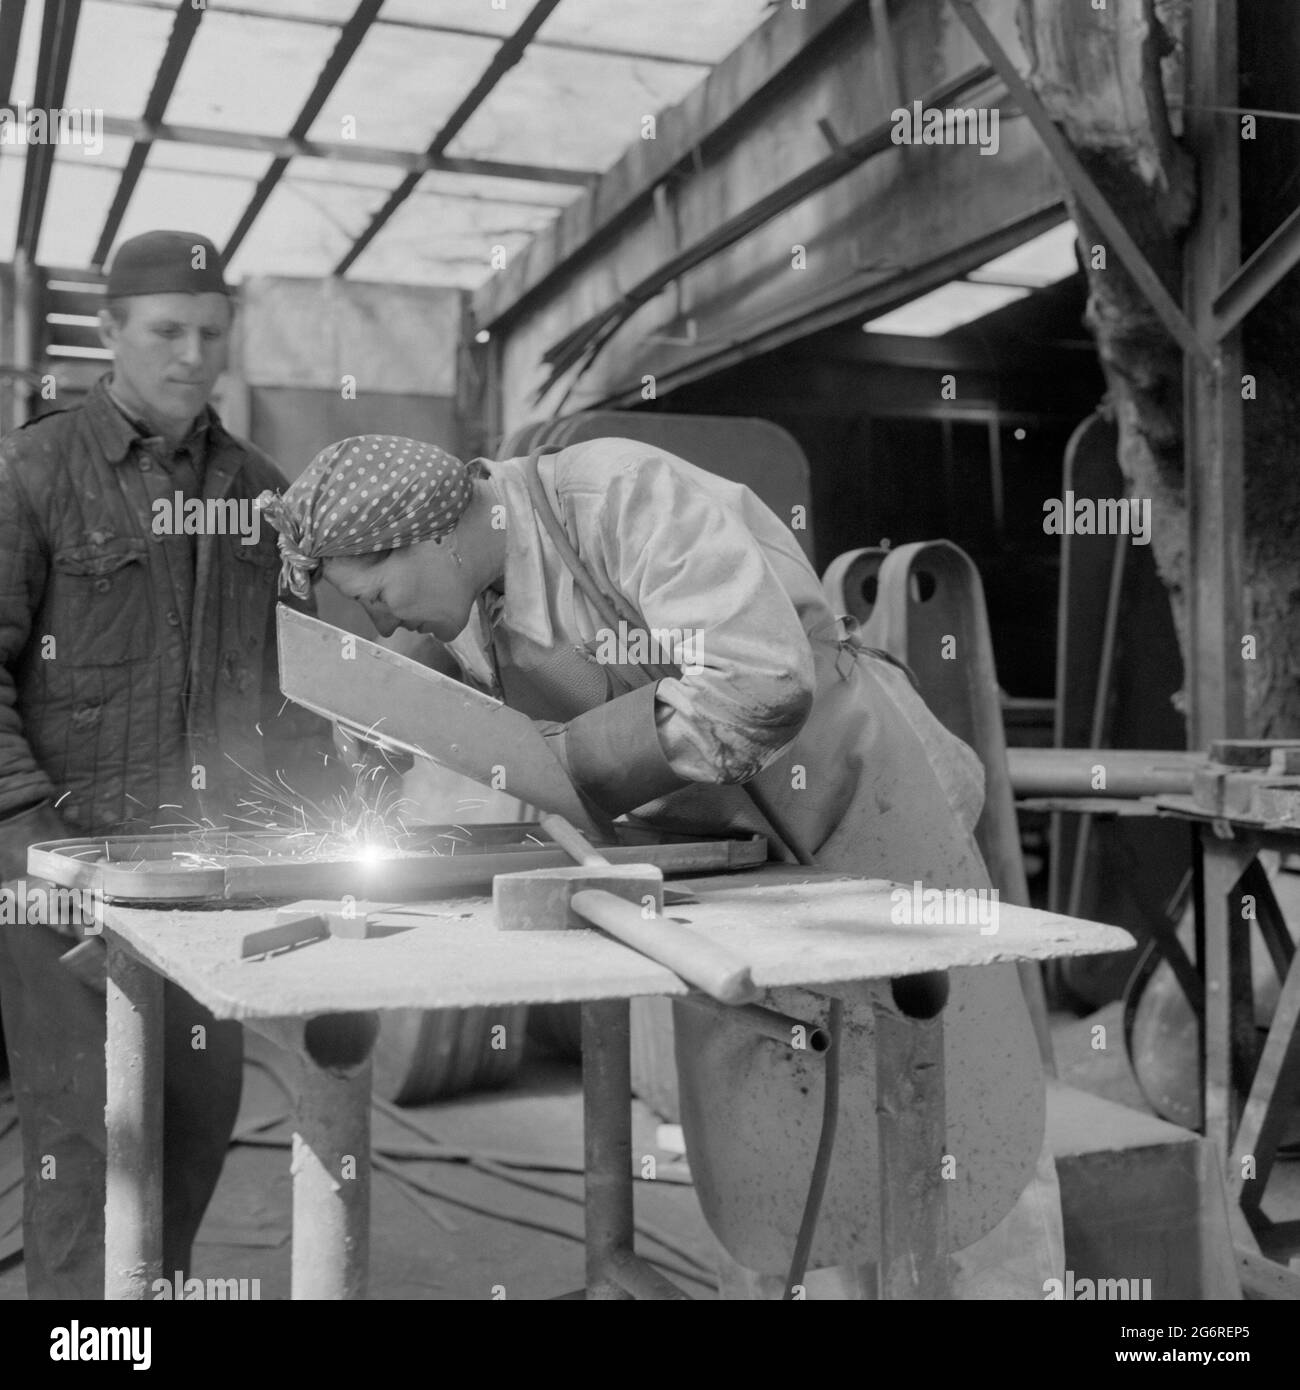 femme soudant tandis que collègue de travail de sexe masculin regarde sur le chantier naval années 1960 budapest hongrie Banque D'Images